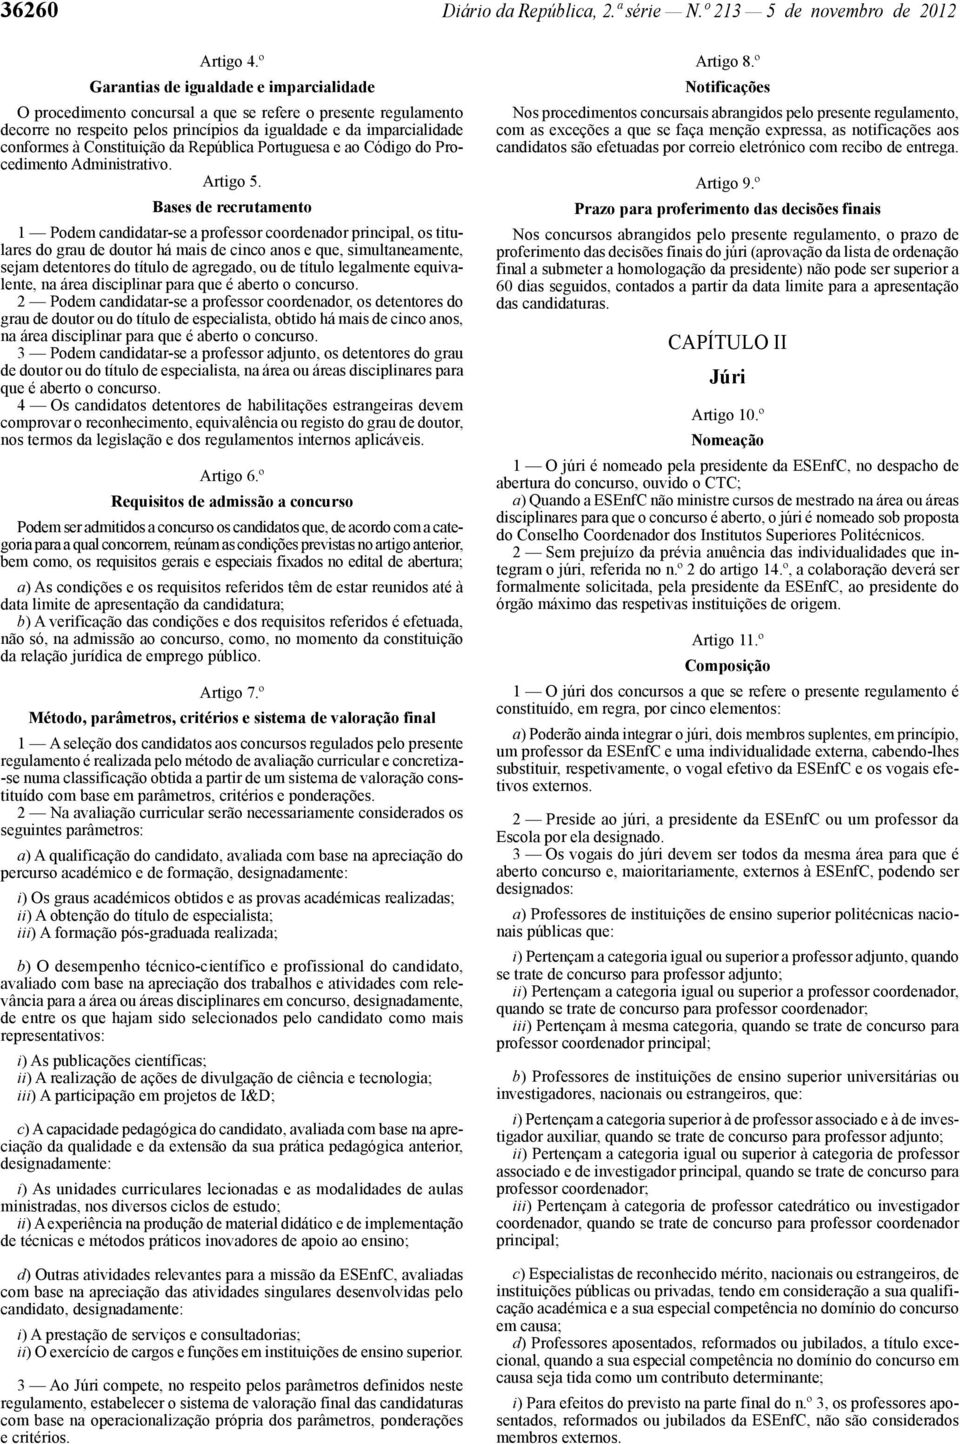 Constituição da República Portuguesa e ao Código do Procedimento Administrativo. Artigo 5.